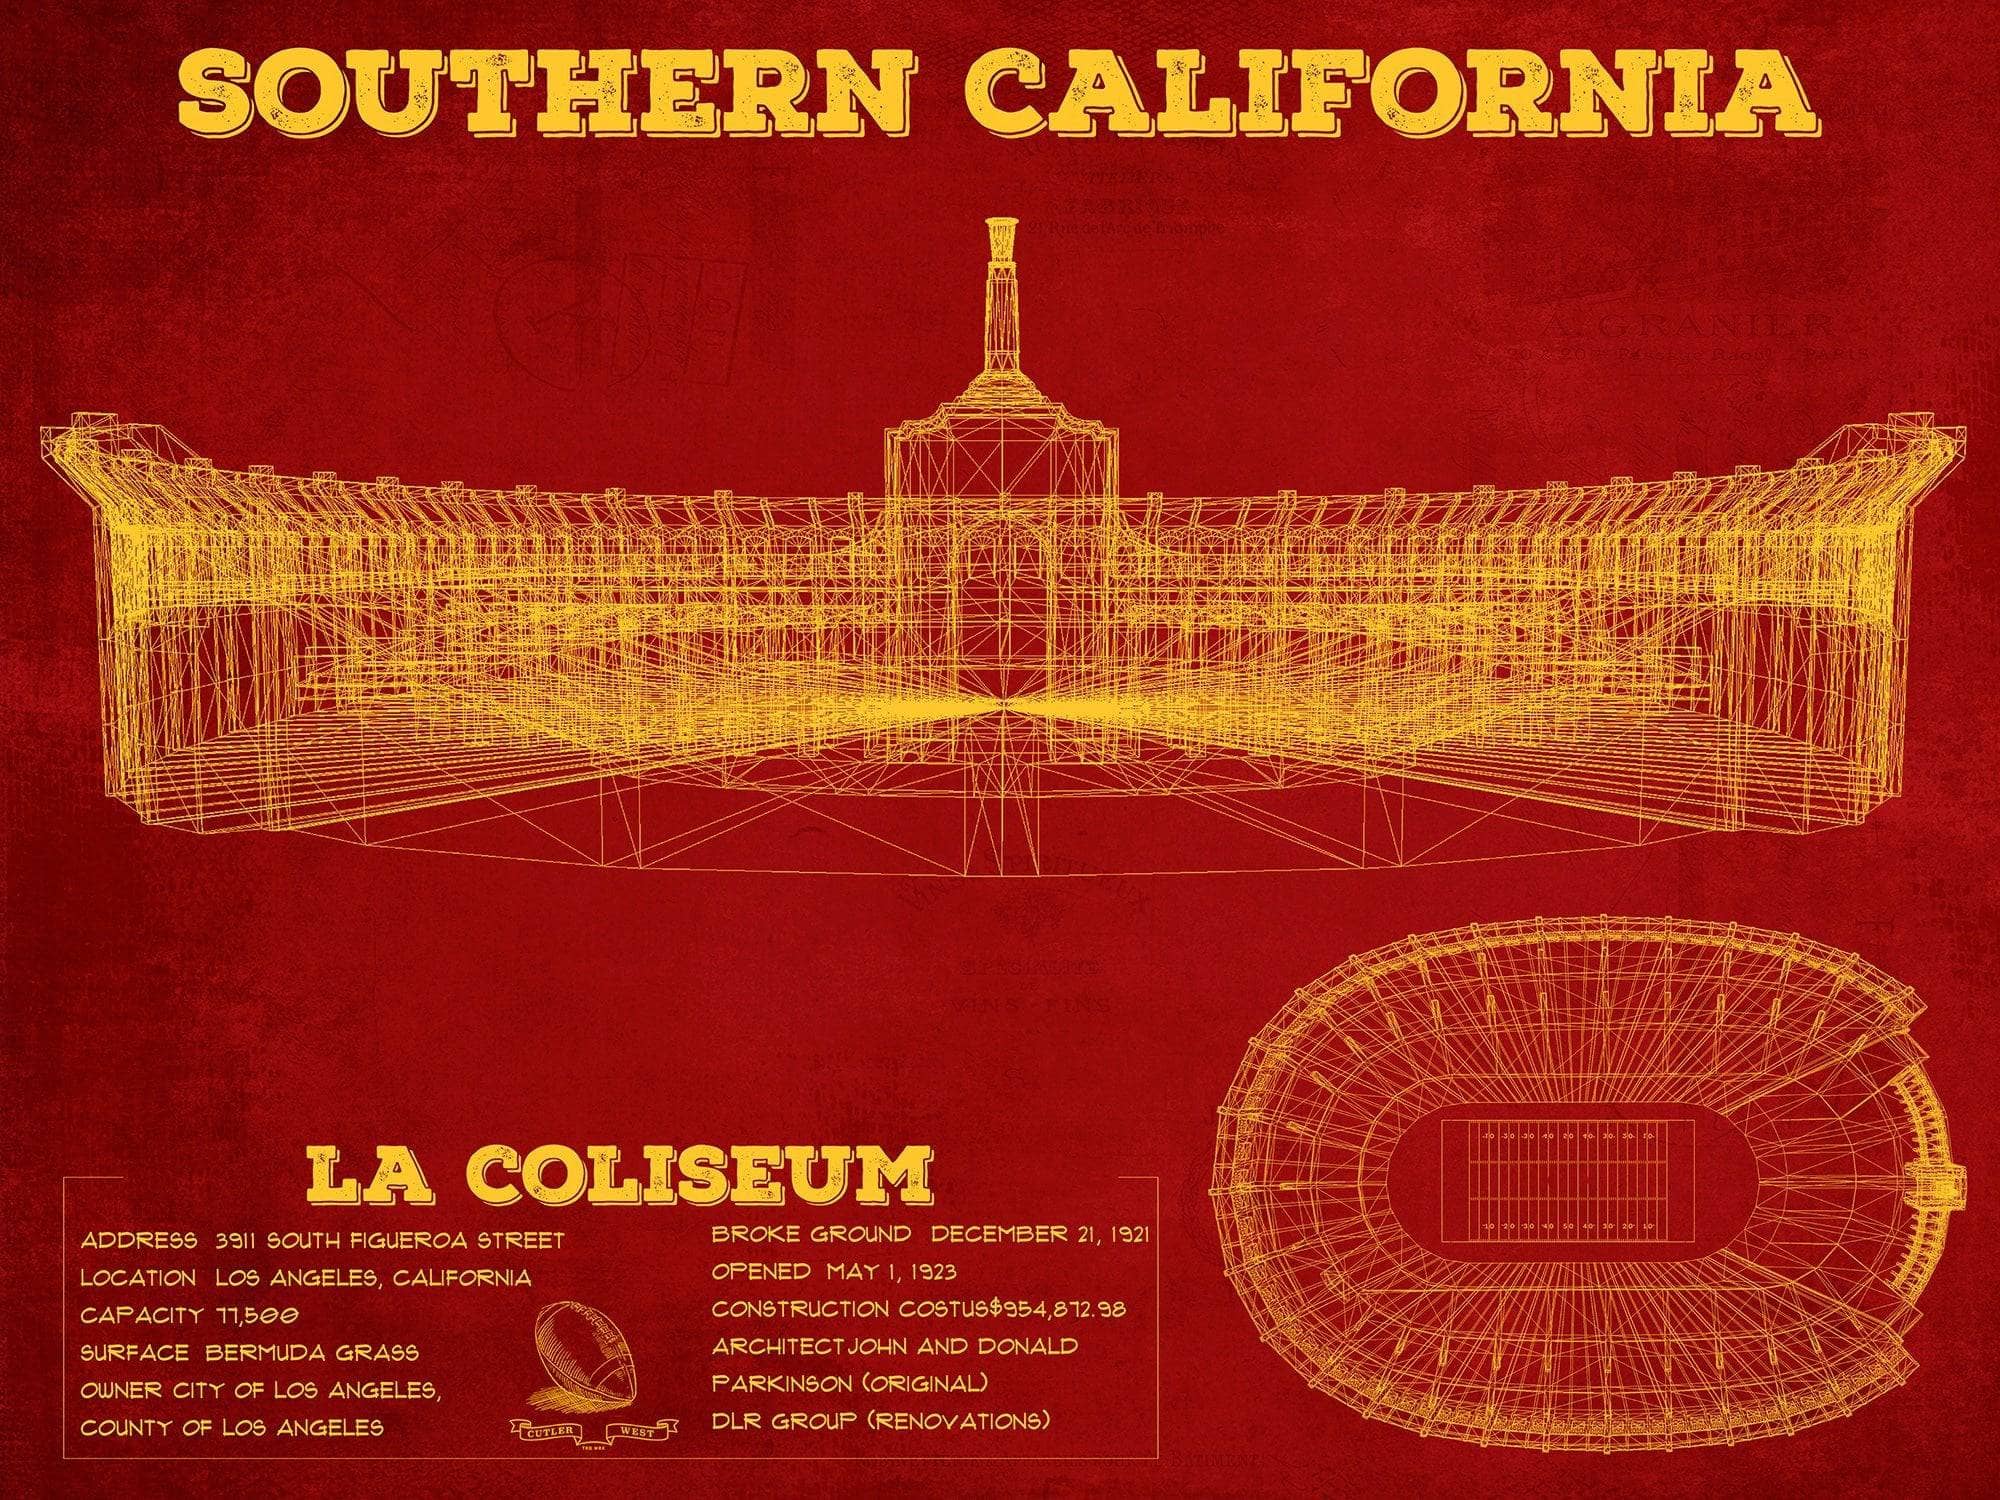 Cutler West College Football Collection 14" x 11" / Unframed Vintage USC Trojans - LA Coliseum Blueprint Art Print 737528166-14"-x-11"66090